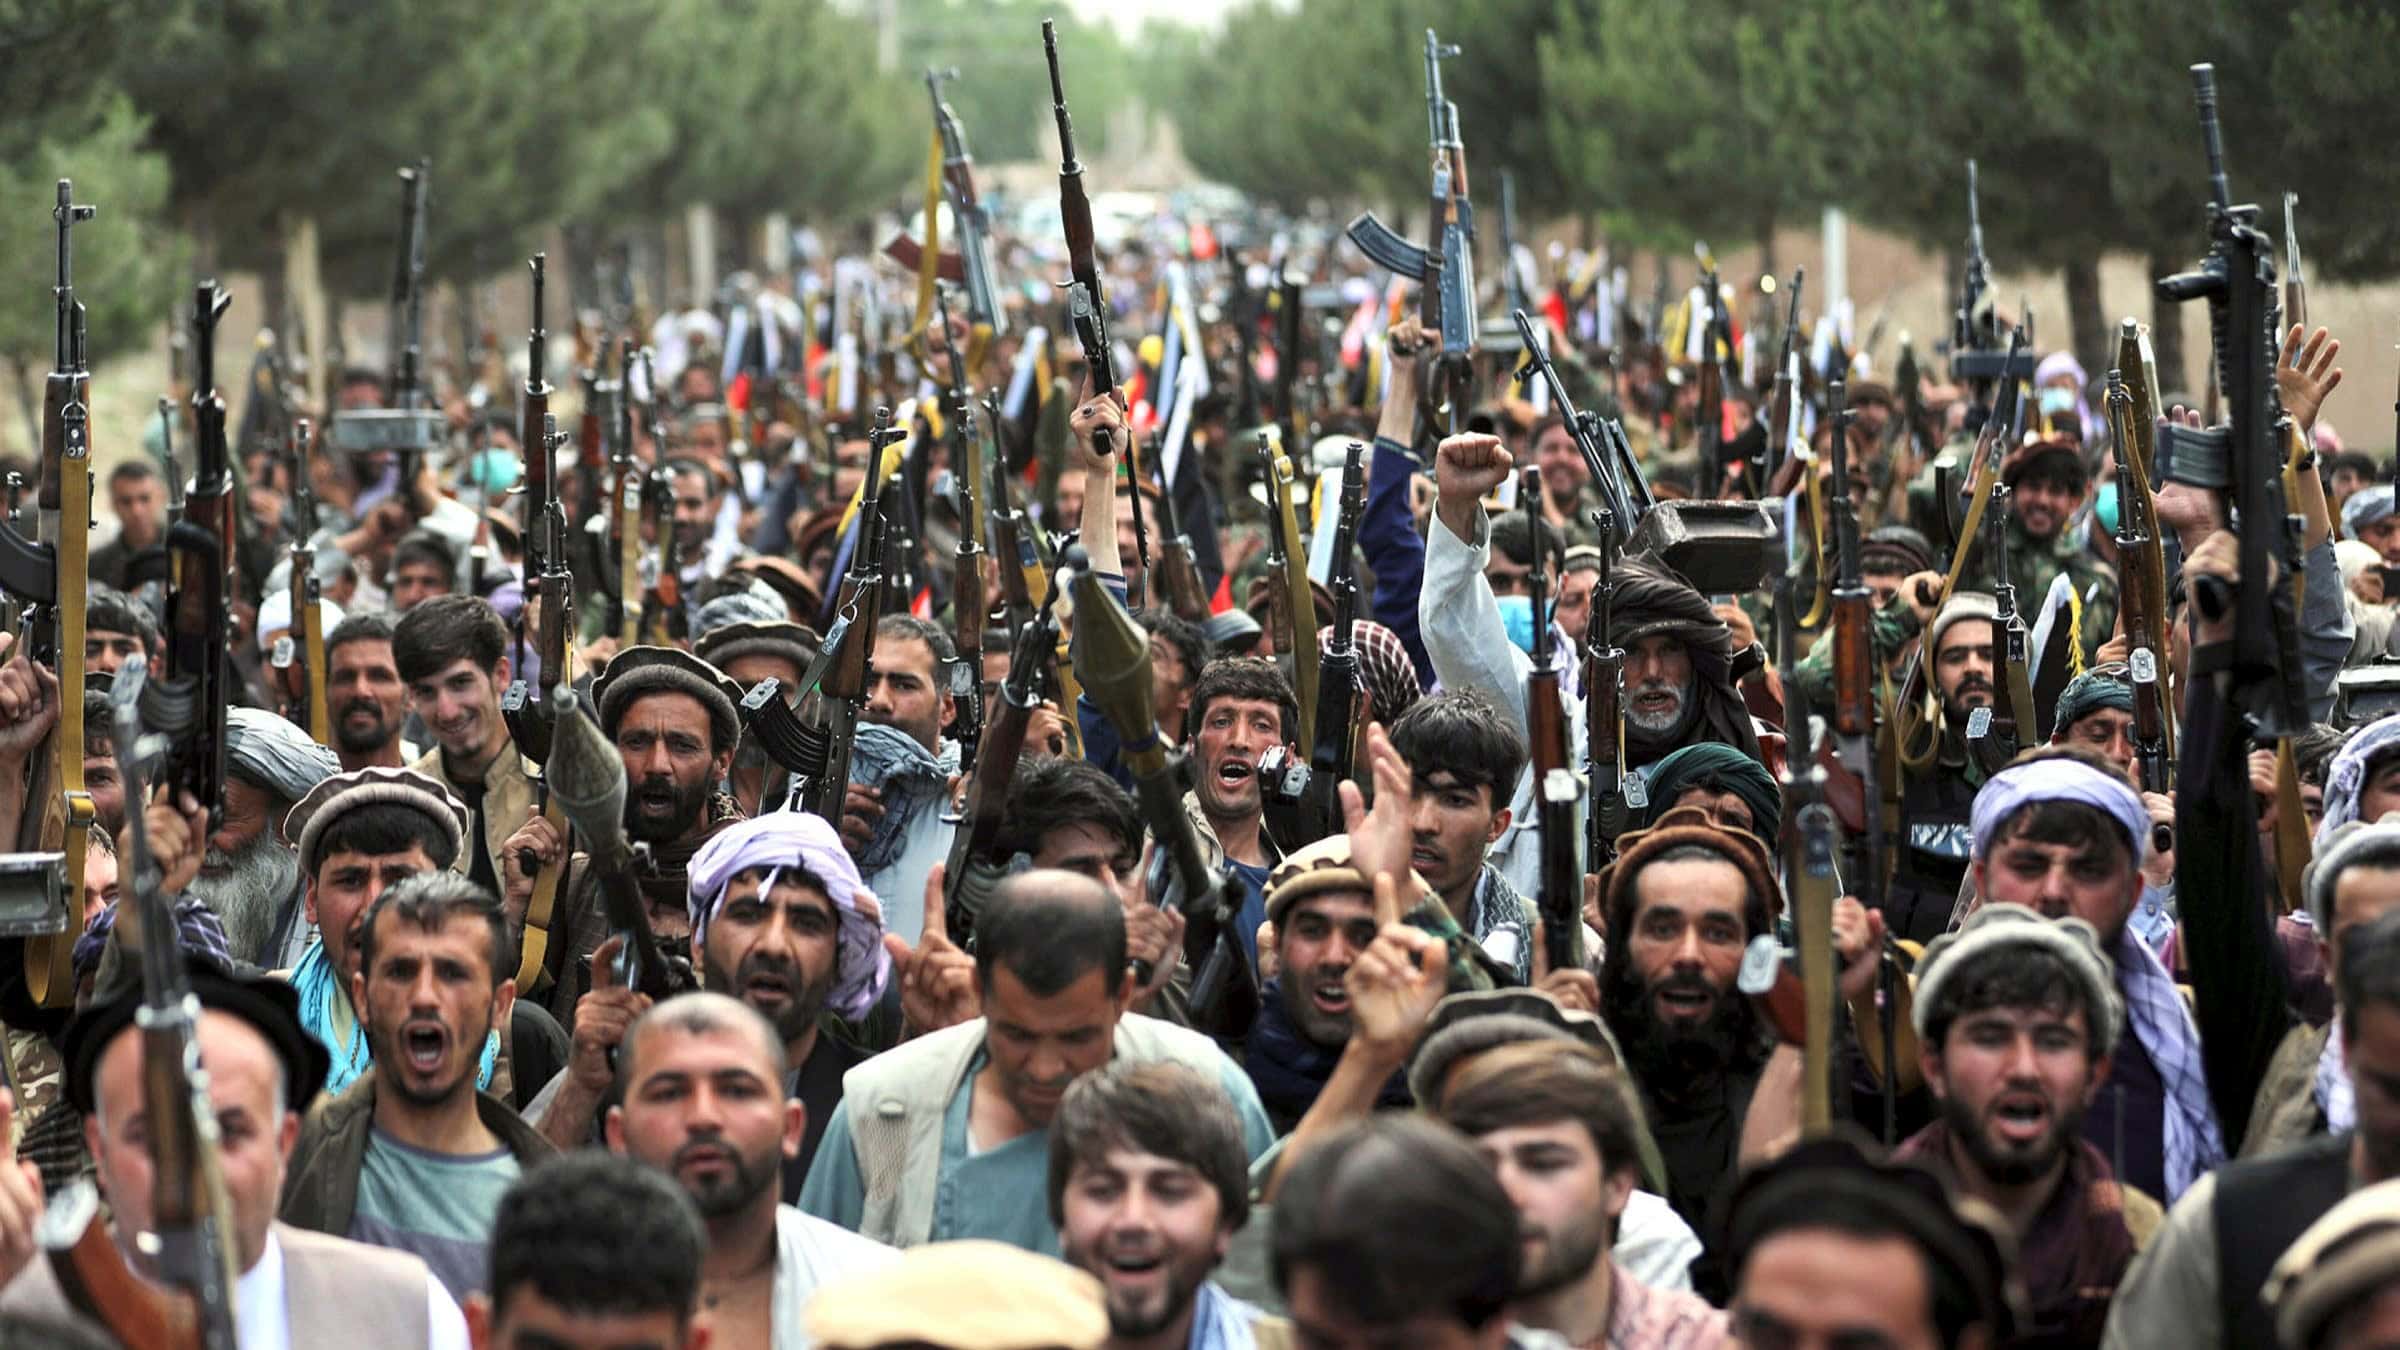 80 ألف مقاتل من طالبان هزموا اكثر من 300 ألأف من القوات الحكومية الأفغانية وسيطروا على أفغانستان watanserb.com